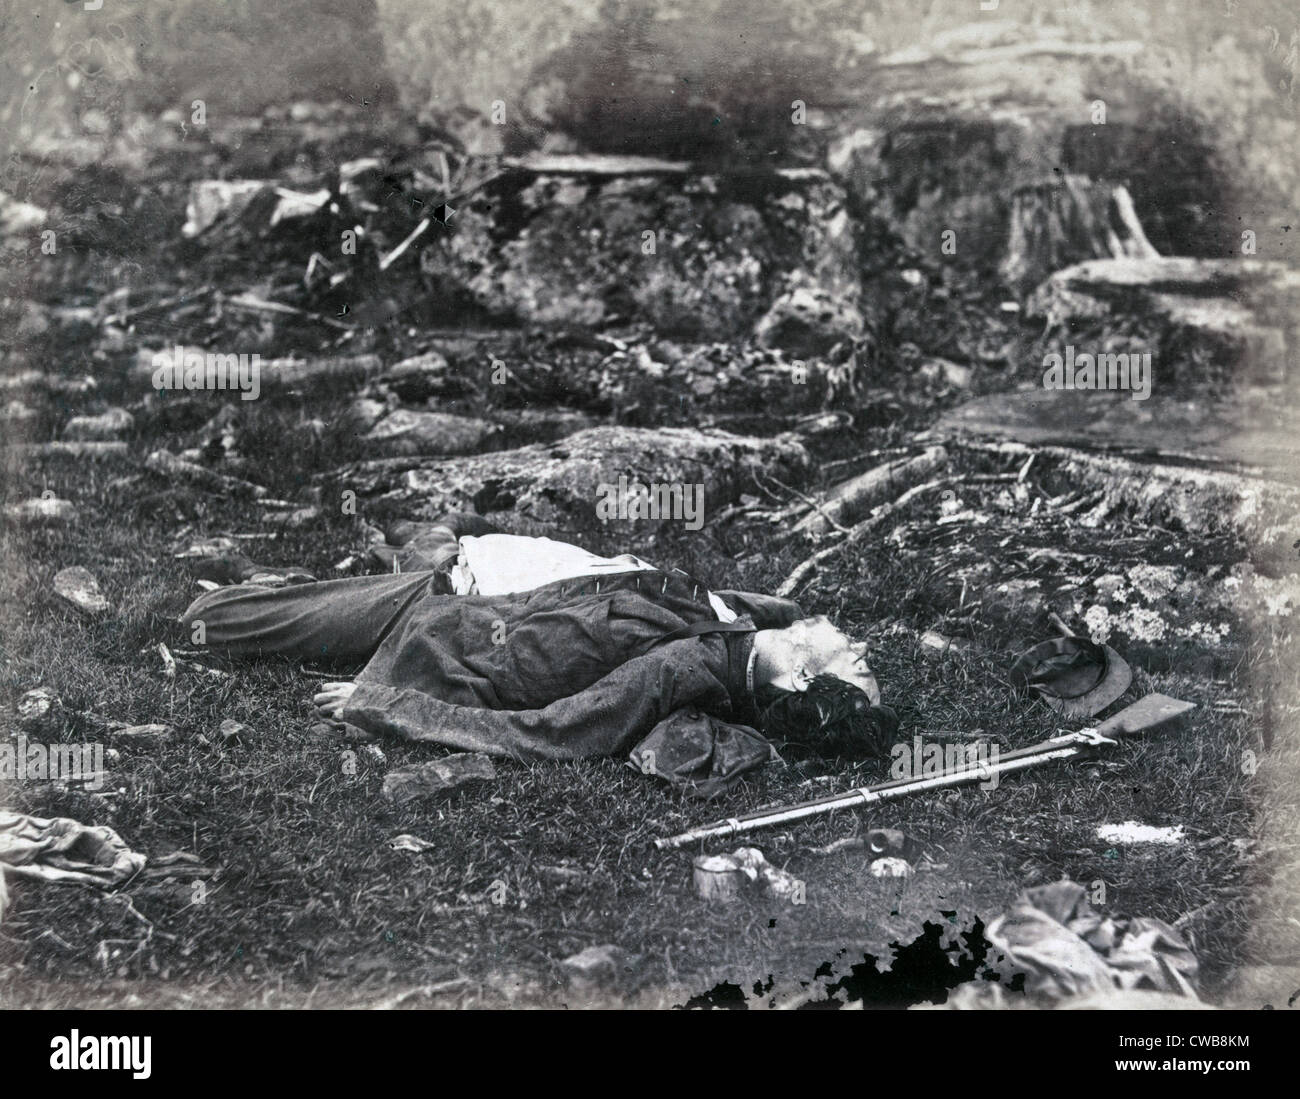 La guerra civile. La battaglia di Gettysburg. Un sharpshooter dell ultima sonno, Gettysburg, Pennsylvania. Alex Gardner, fotografo. Foto Stock